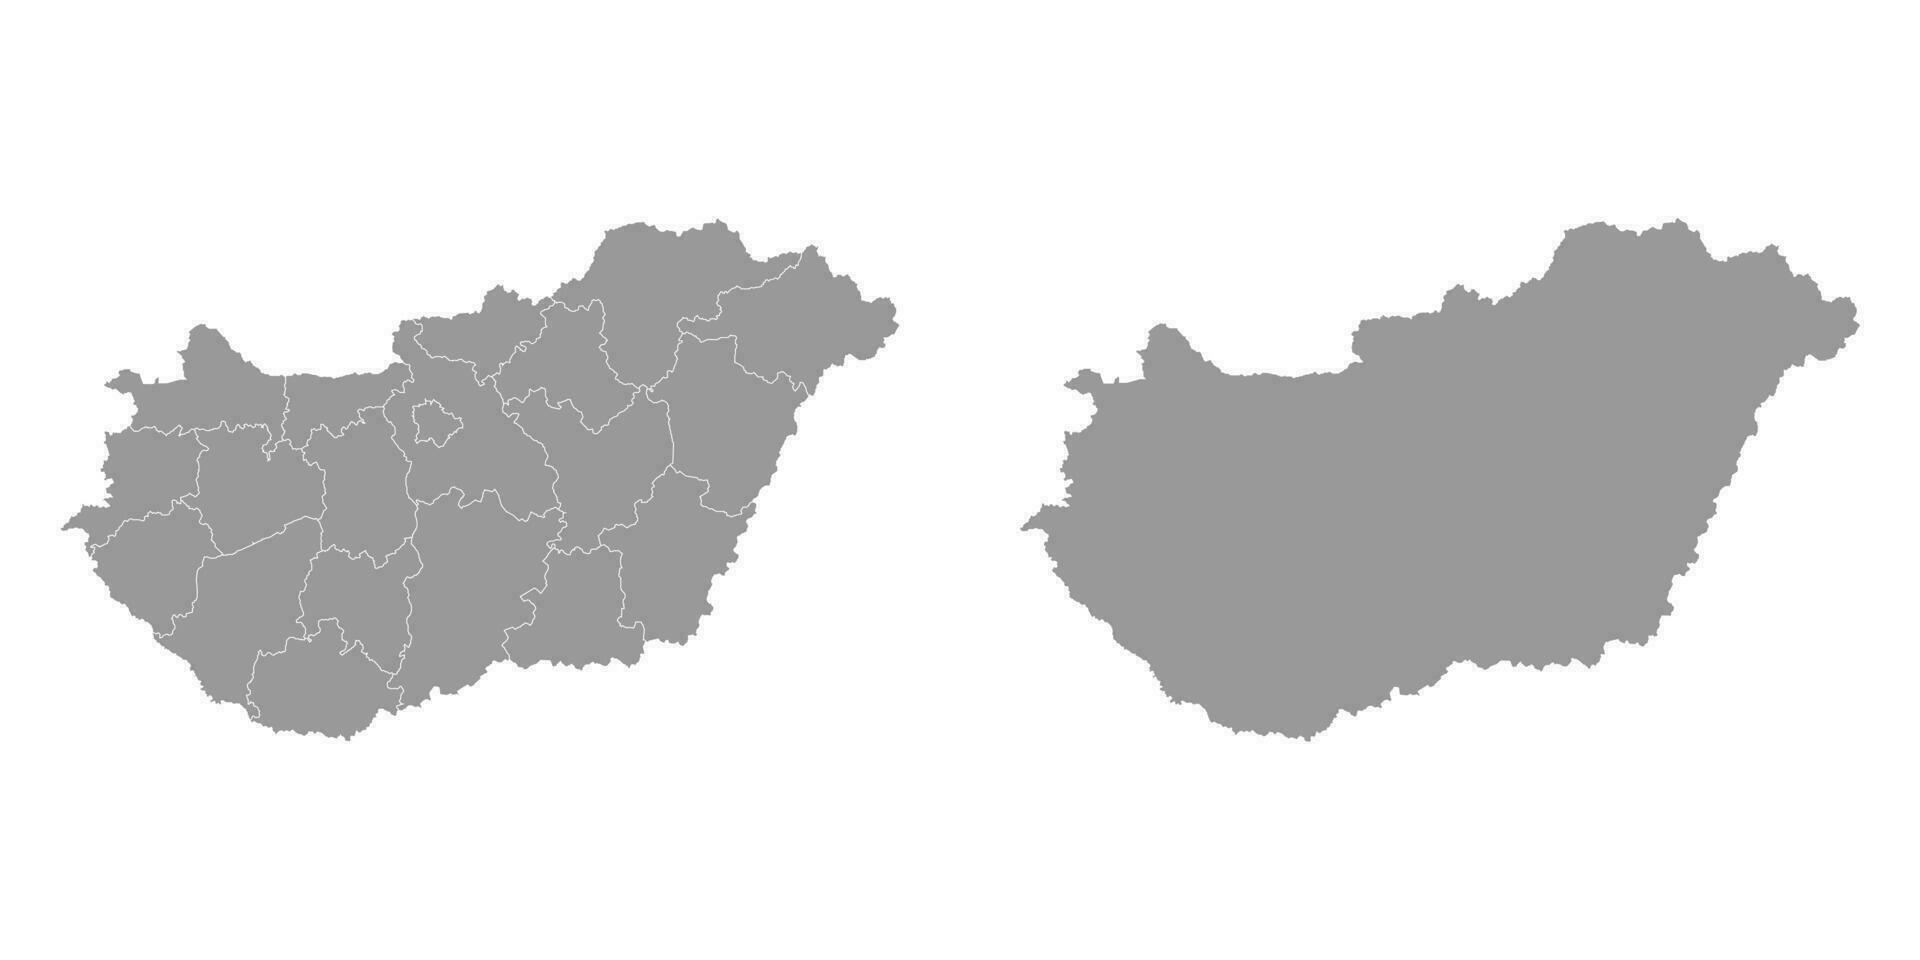 Hongarije grijs kaart met administratief districten. vector illustratie.